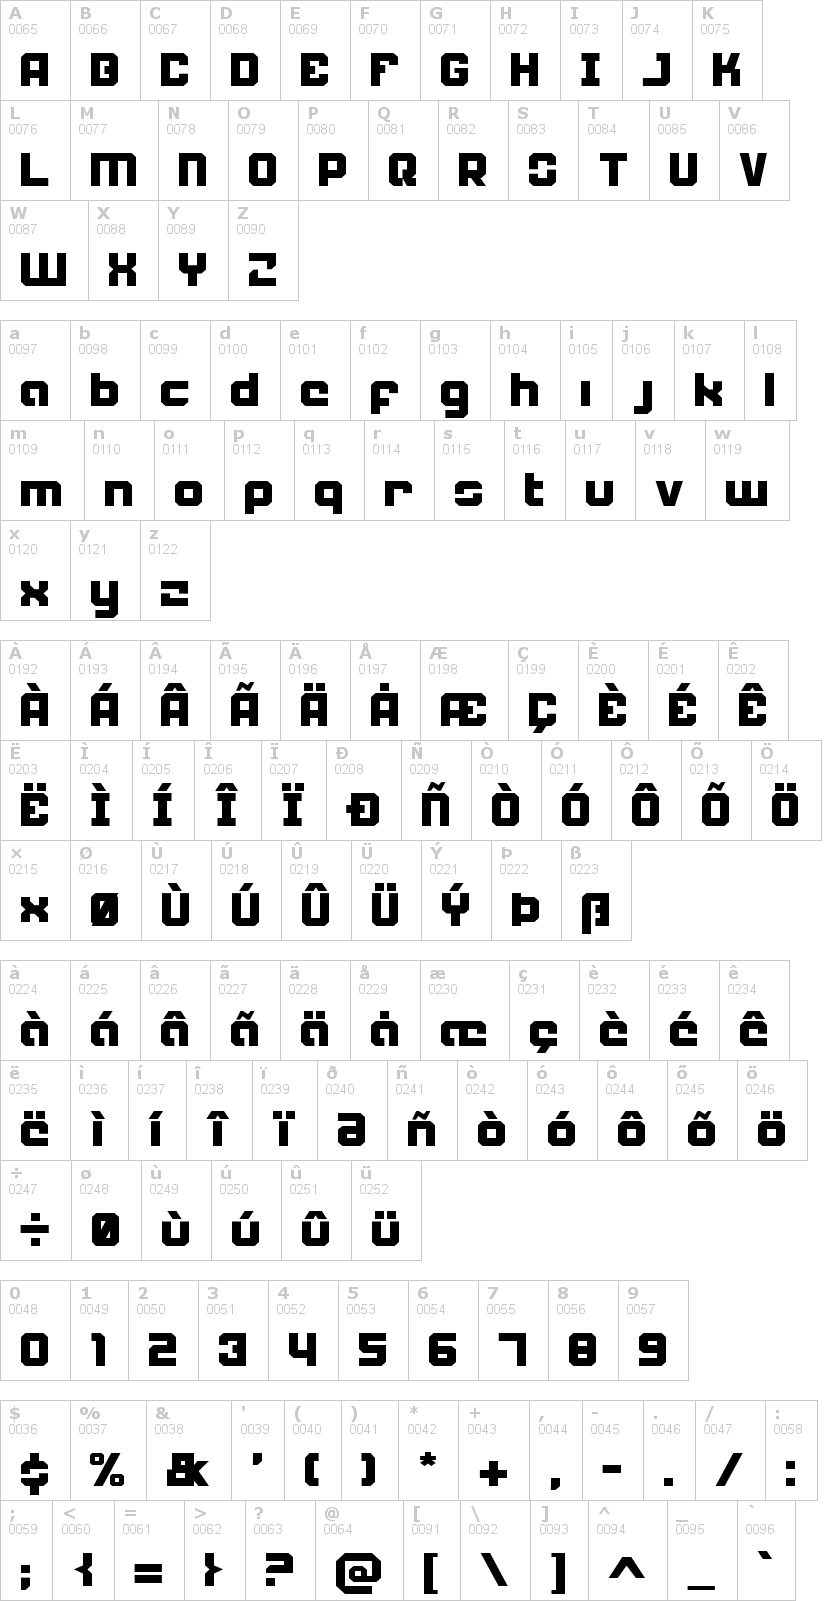 Lettere dell'alfabeto del font weaponeer con le quali è possibile realizzare adesivi prespaziati